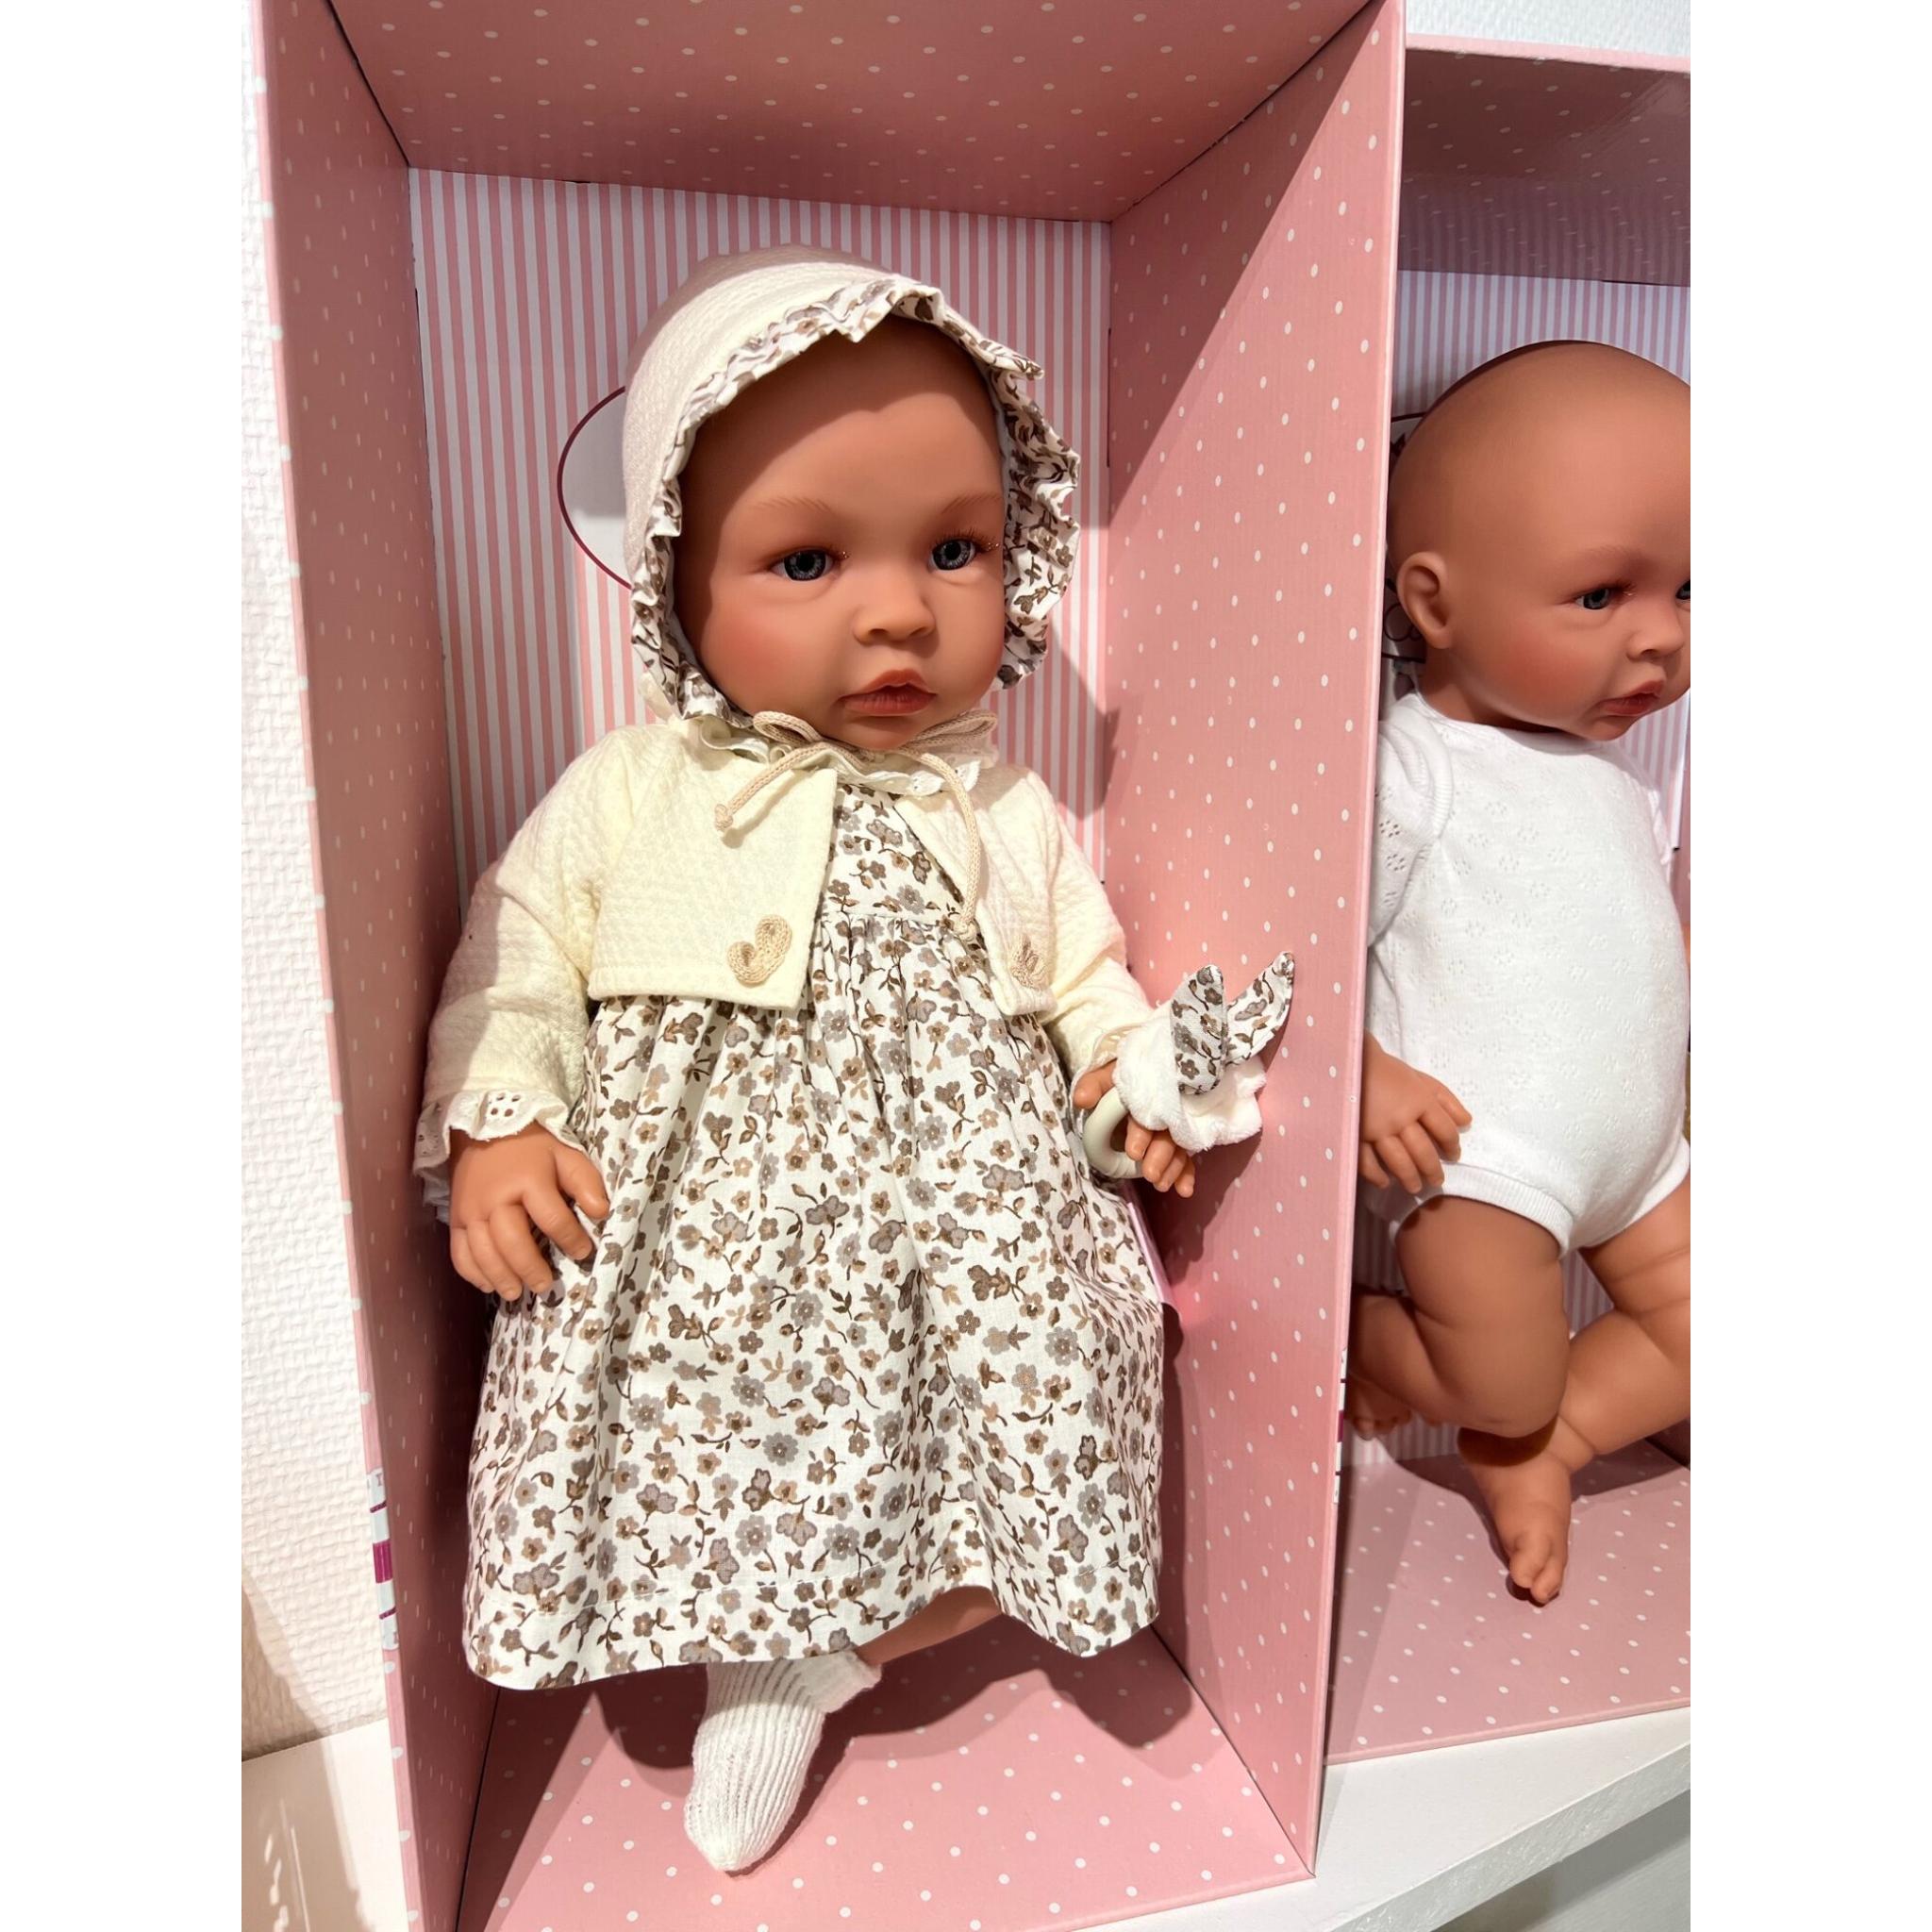 Alaska kuffert omfavne Asi - Dukke - Leonora: Smukkeste dukke med fine detaljer